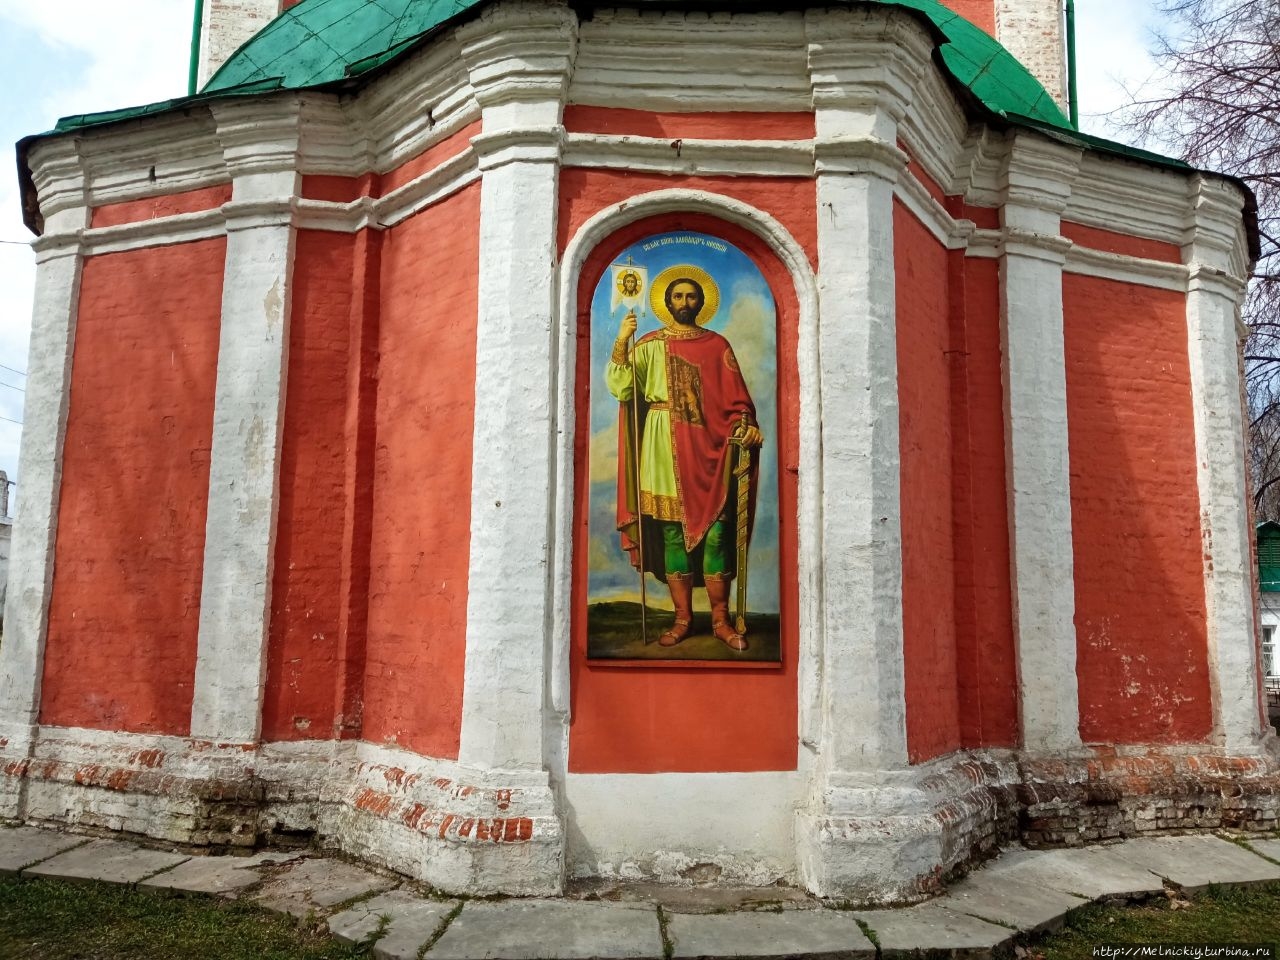 Небольшая прогулка по Красной площади Переславль-Залесский, Россия